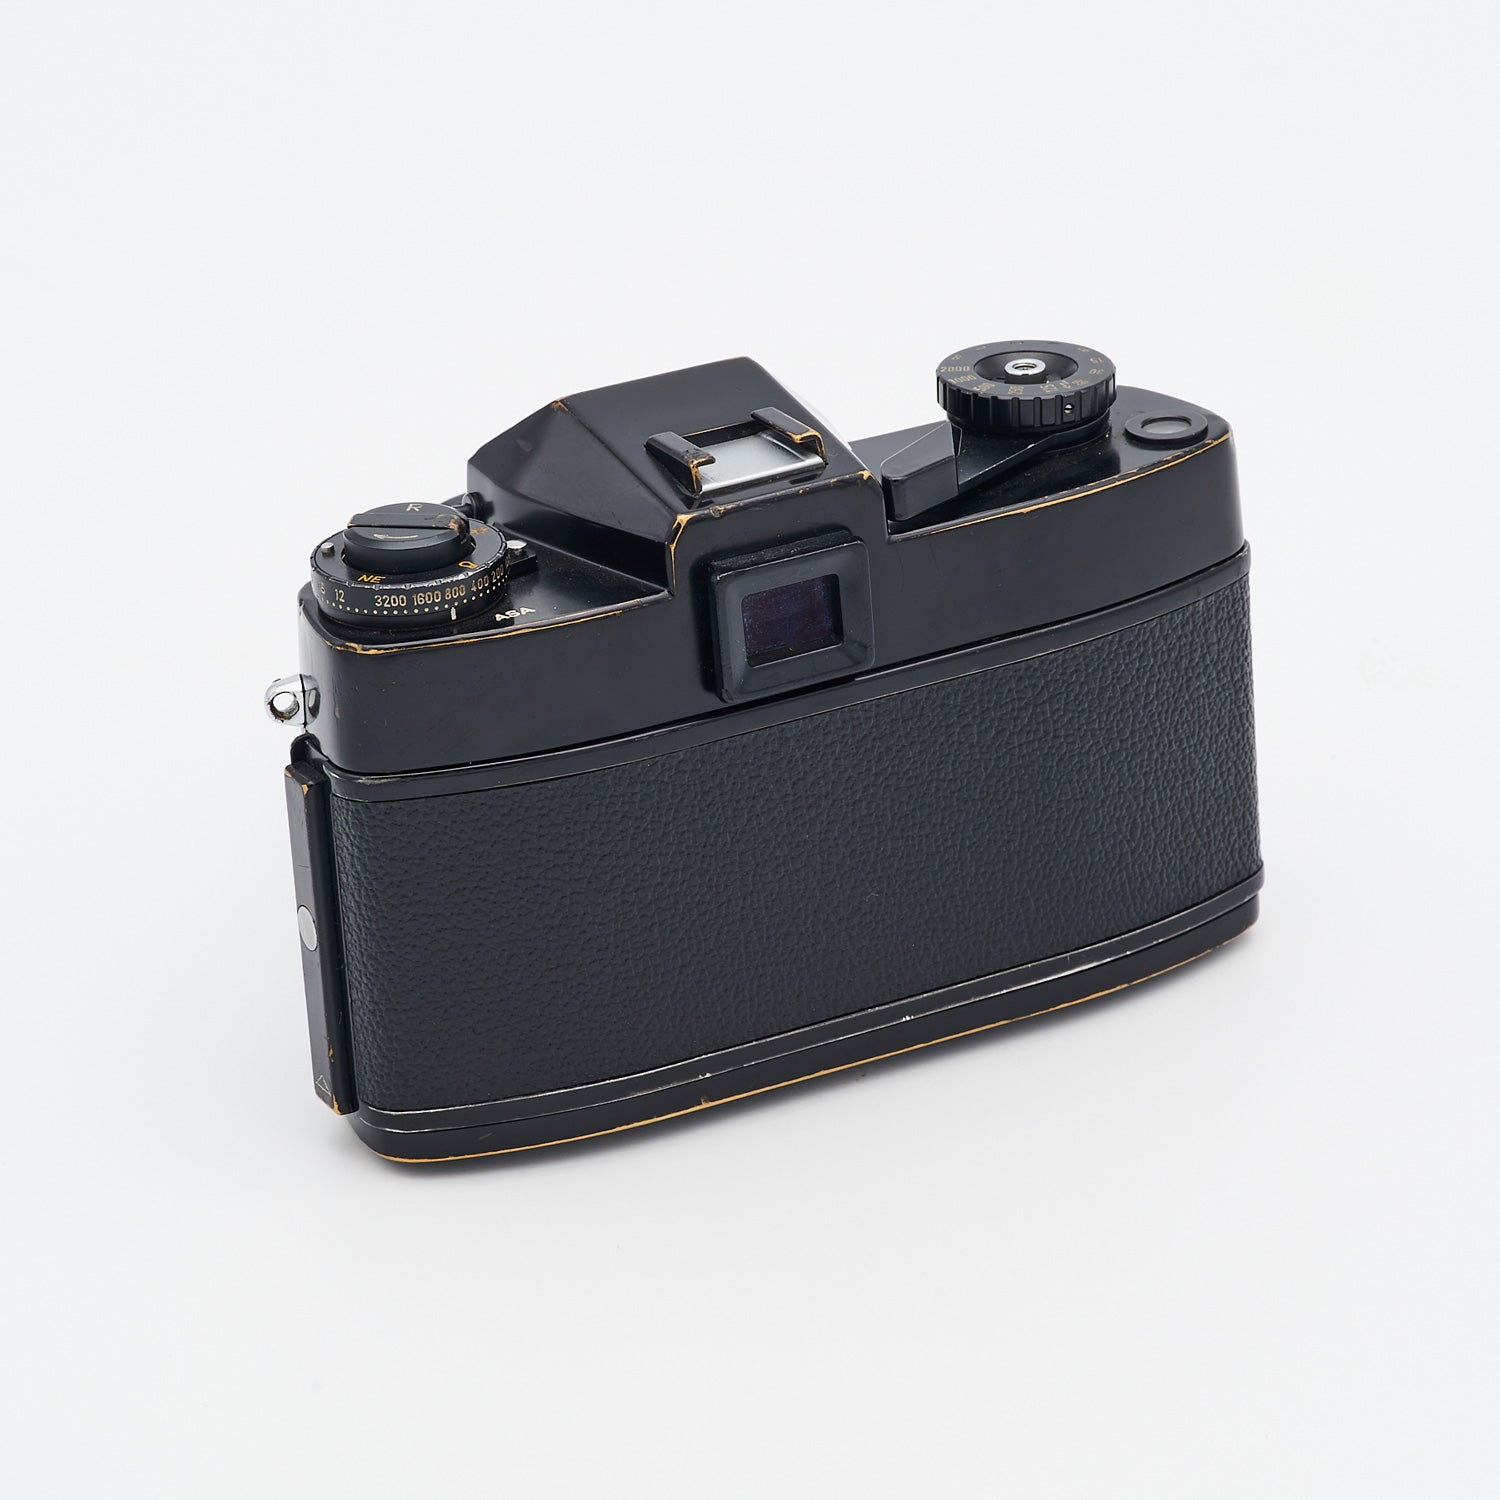 Leicaflex SL (S/N 1275759) Set inkl. Elmarit-R 2.8/35mm (S/N 2170001)